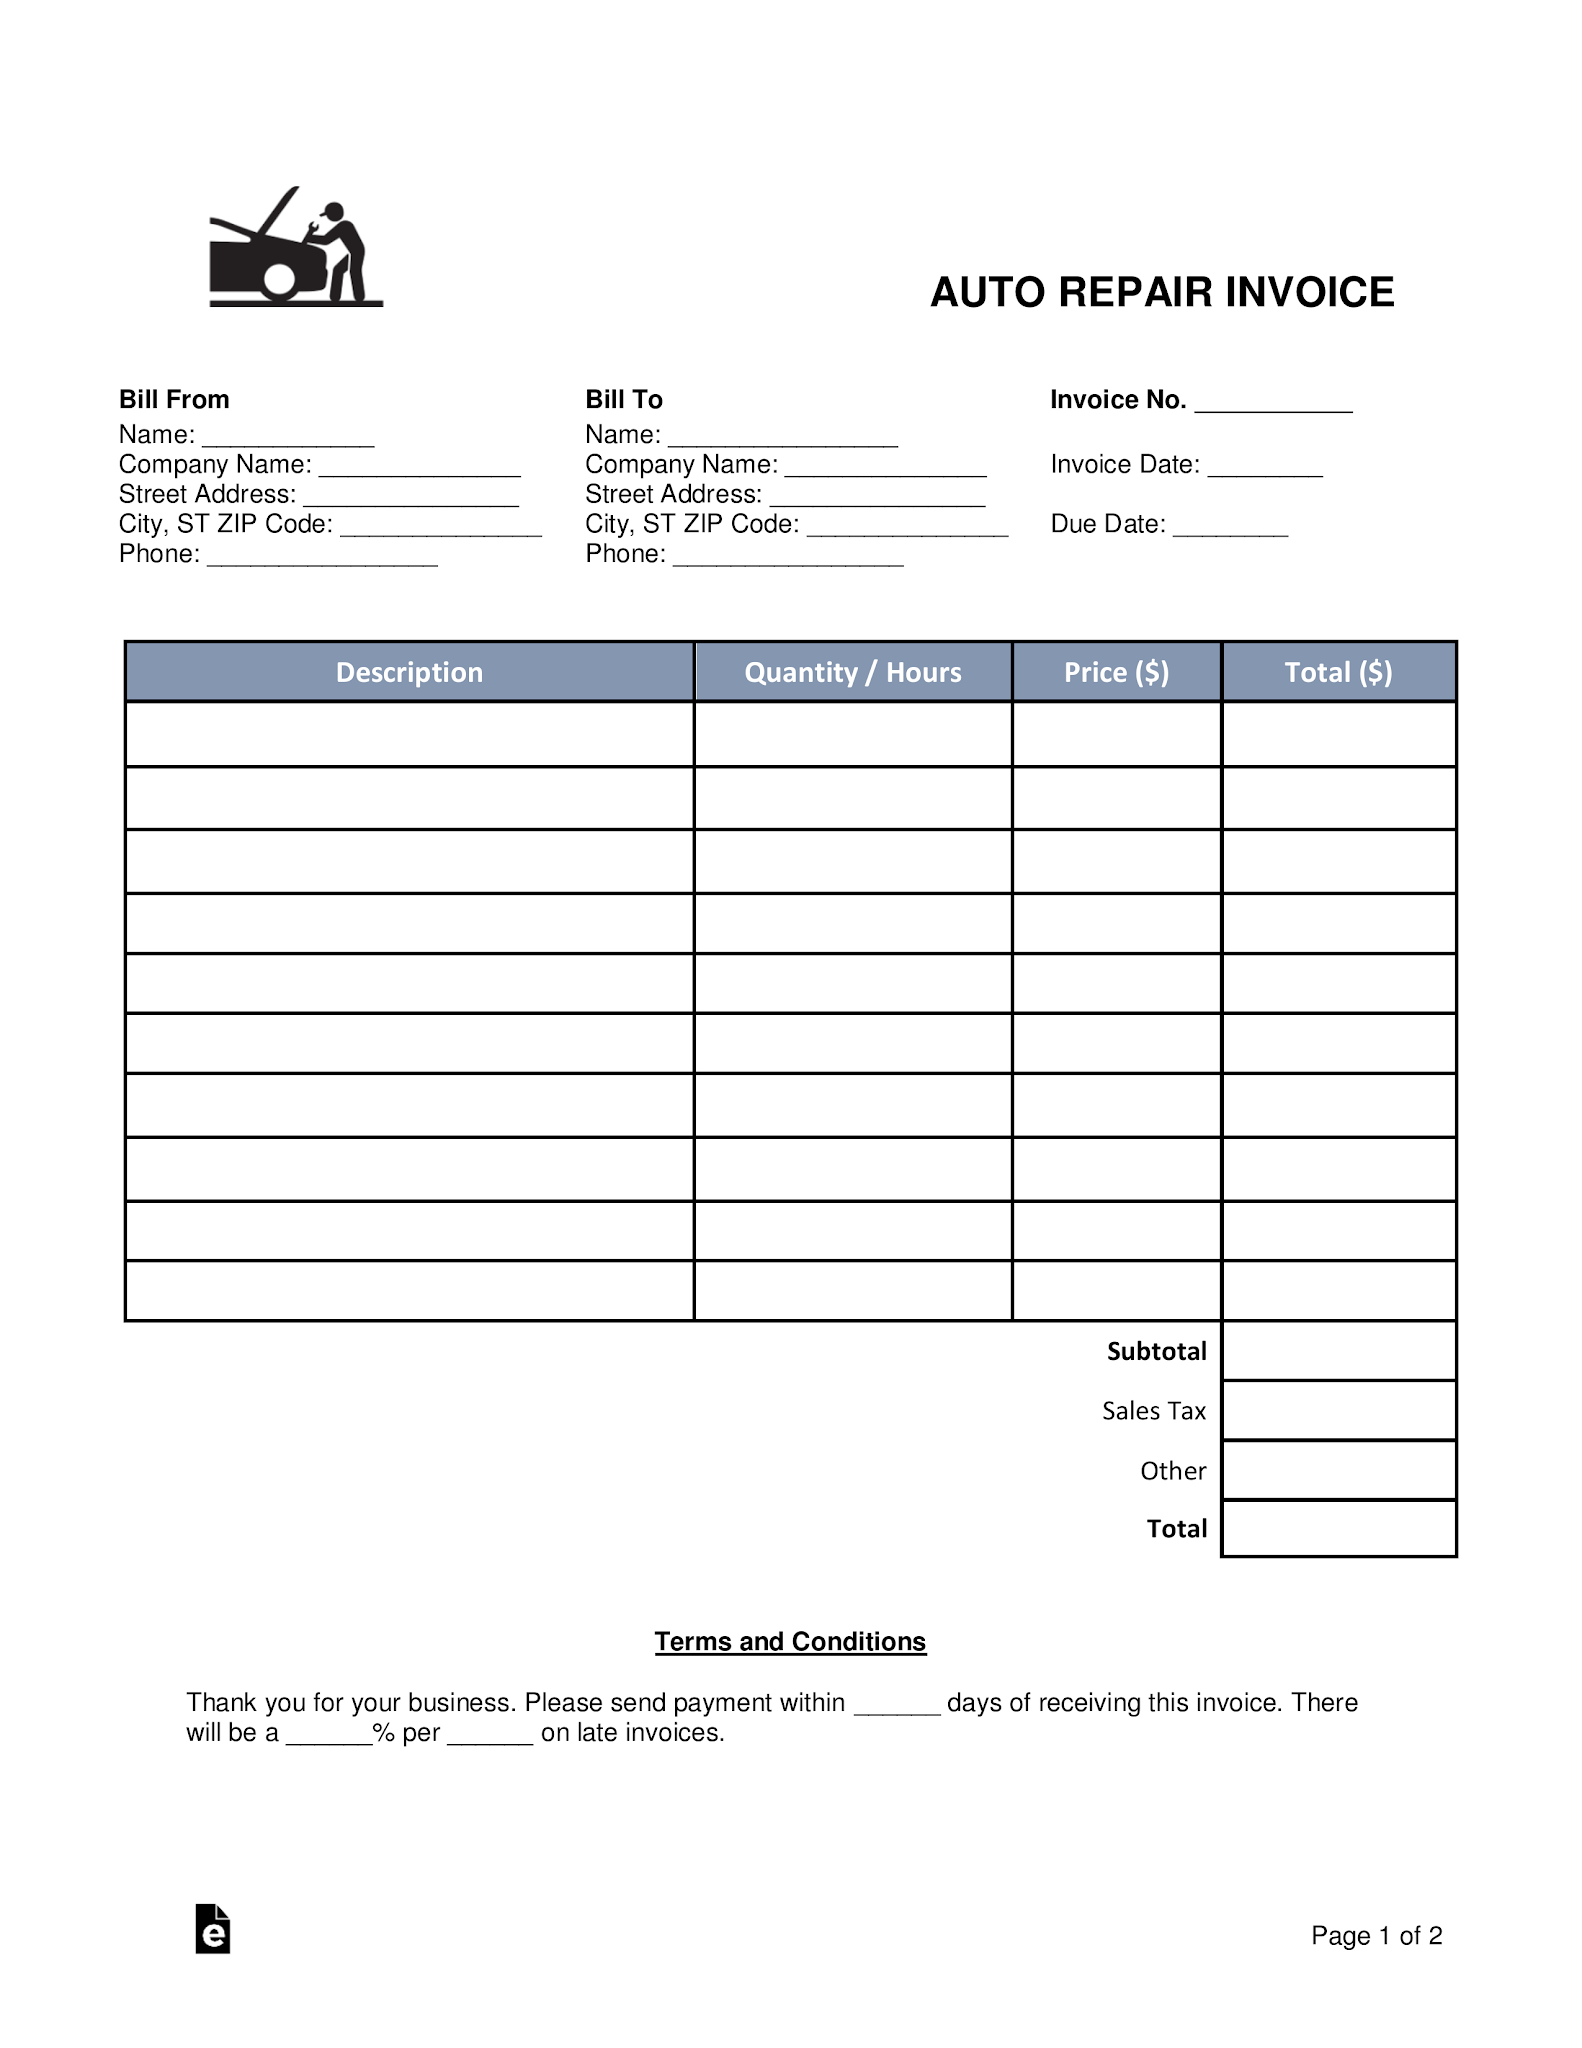 custom auto repair invoice software